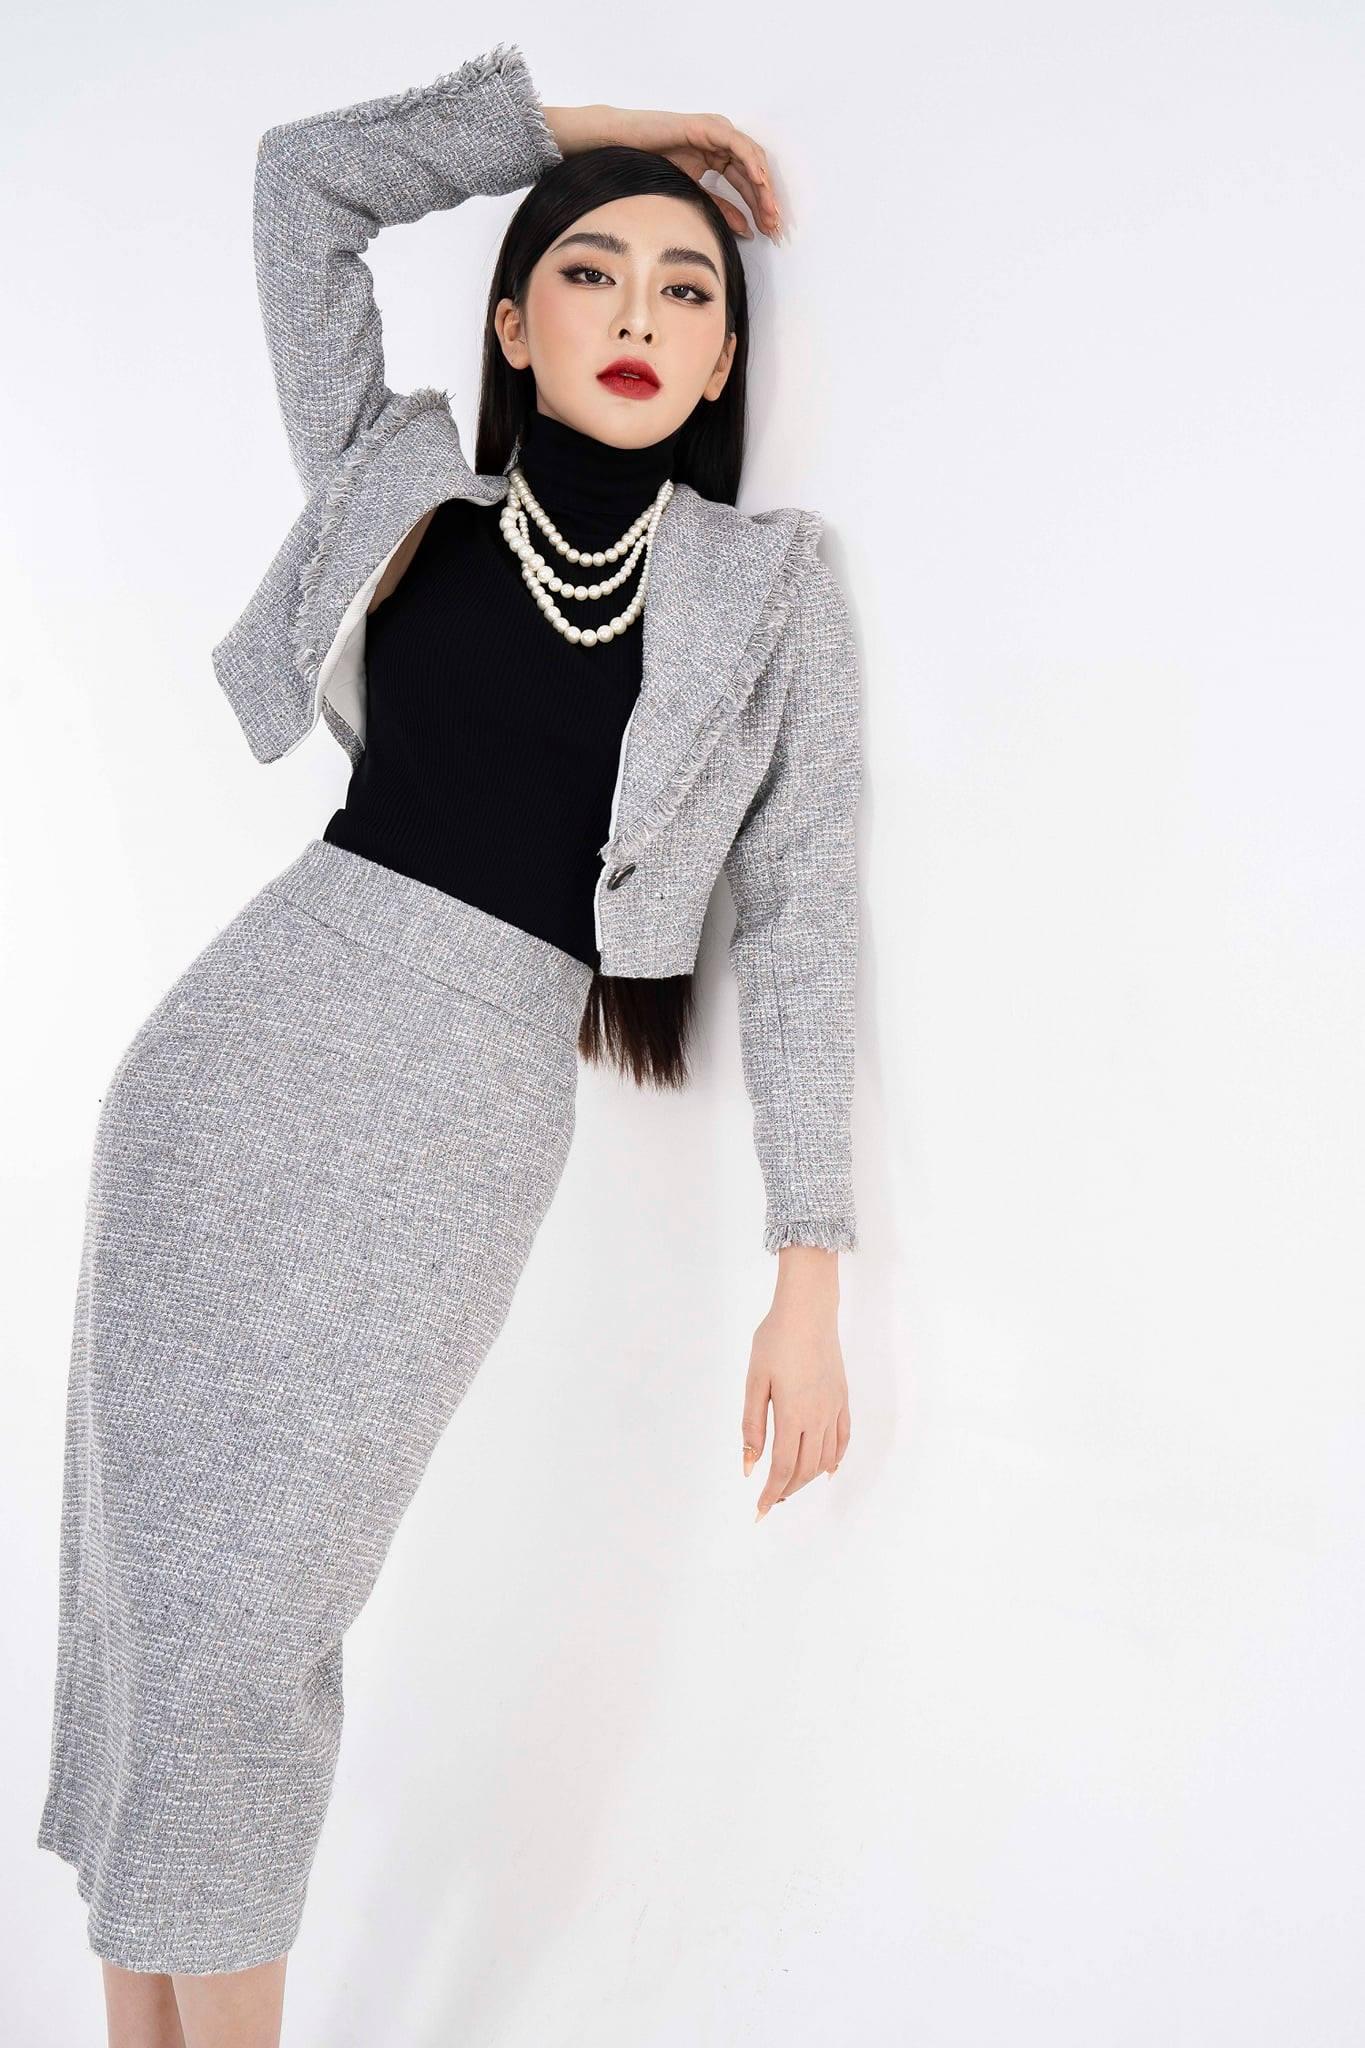 HÀNG ORDER Chân váy dạ tweed xếp ly kiểu mới, đính cúc thời trang kèm ảnh  thật | Shopee Việt Nam